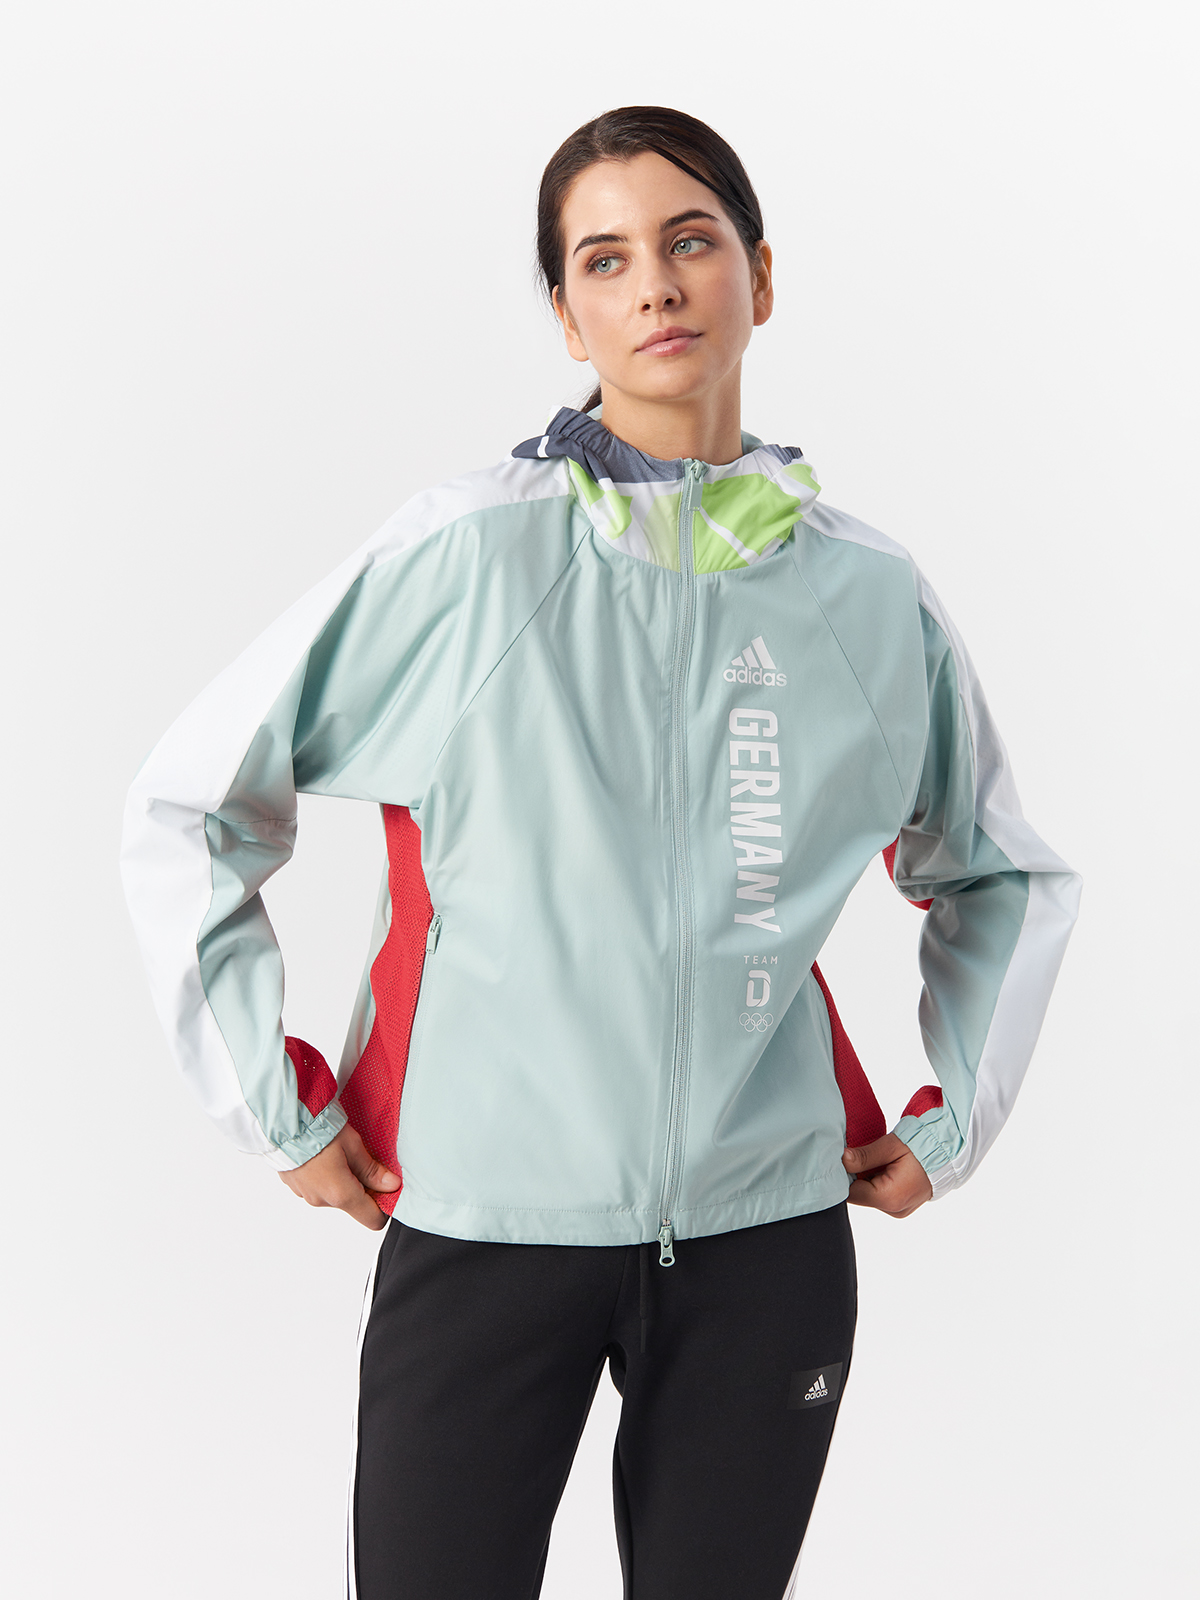 Ветровка Adidas для женщин, на молнии, FS0074, Grntnt, 36